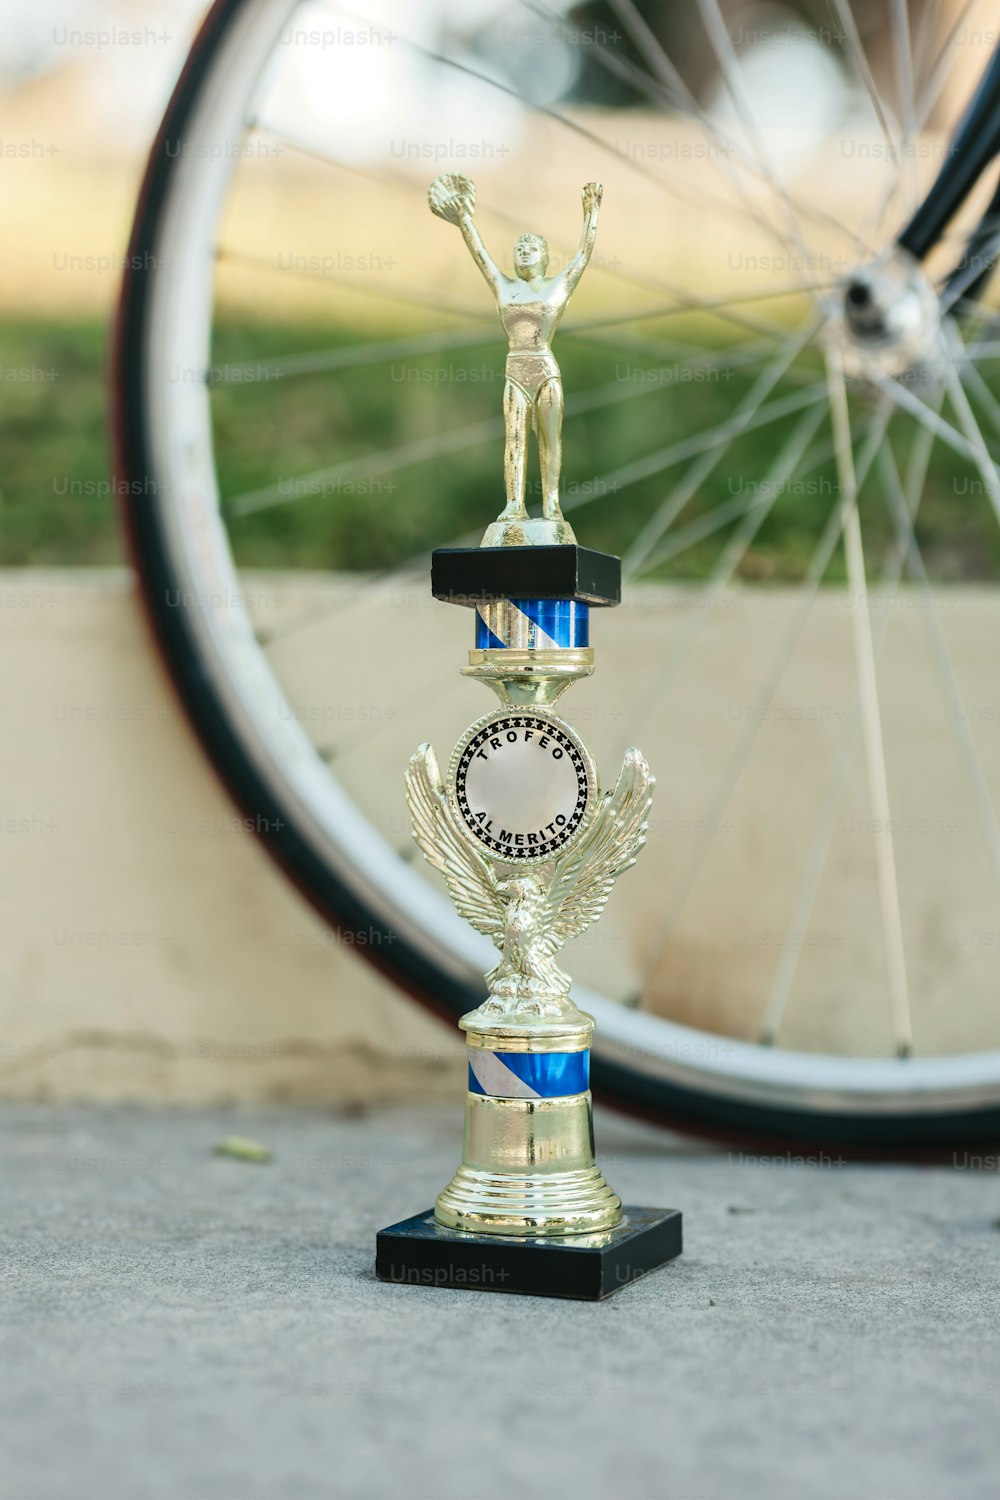 Un trofeo dorado sentado junto a una bicicleta